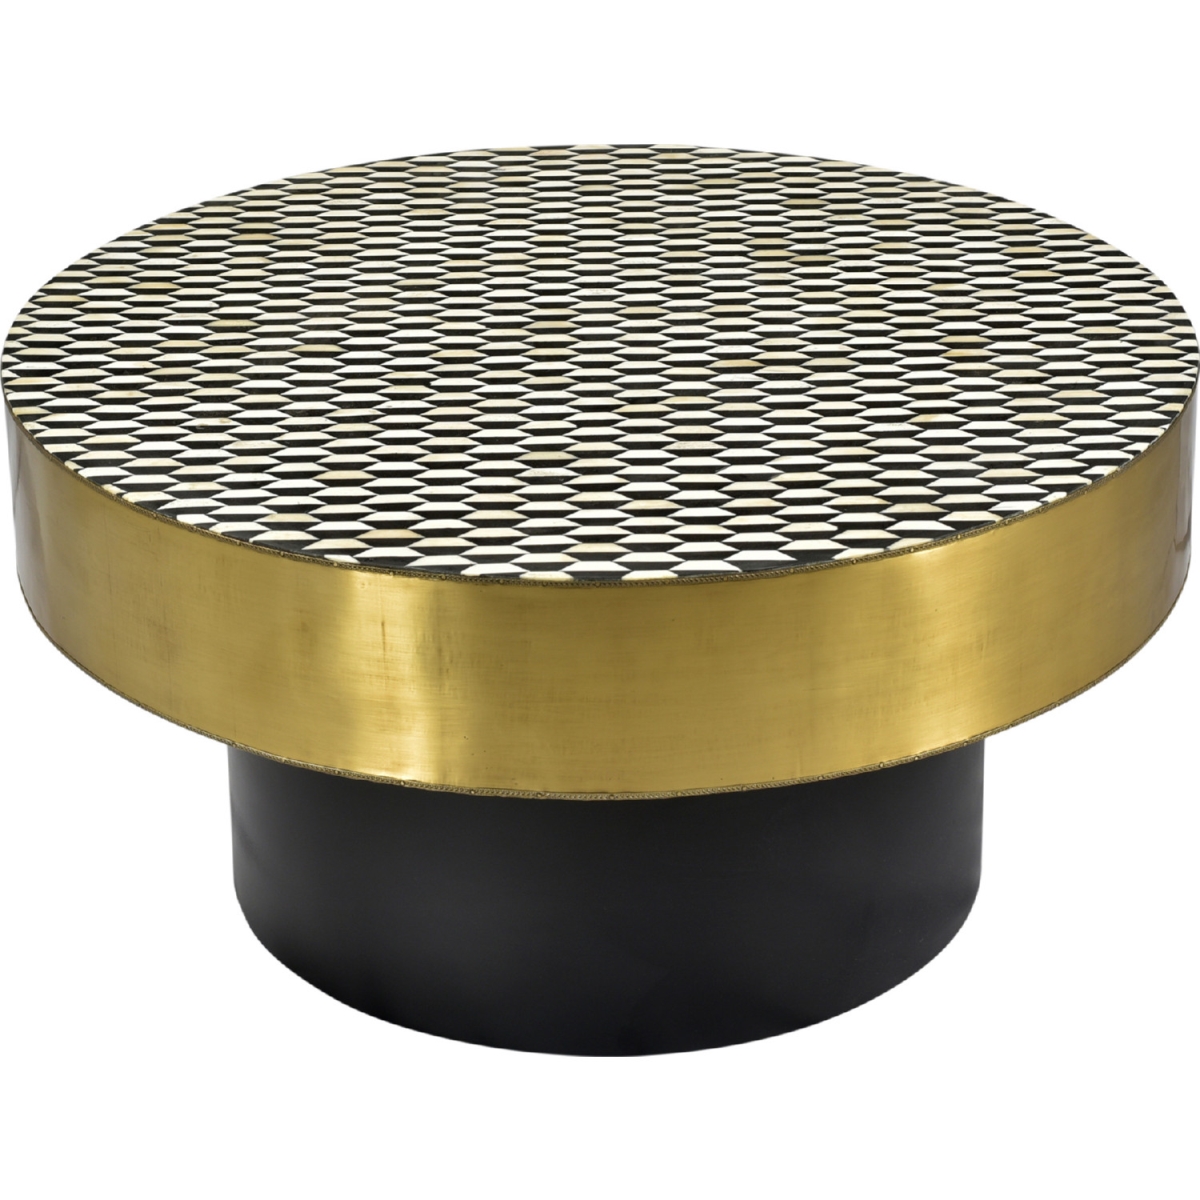 Gz-1010-43 Optic Coffee Table - Brass, 16 X 31.5 X 31.5 In.